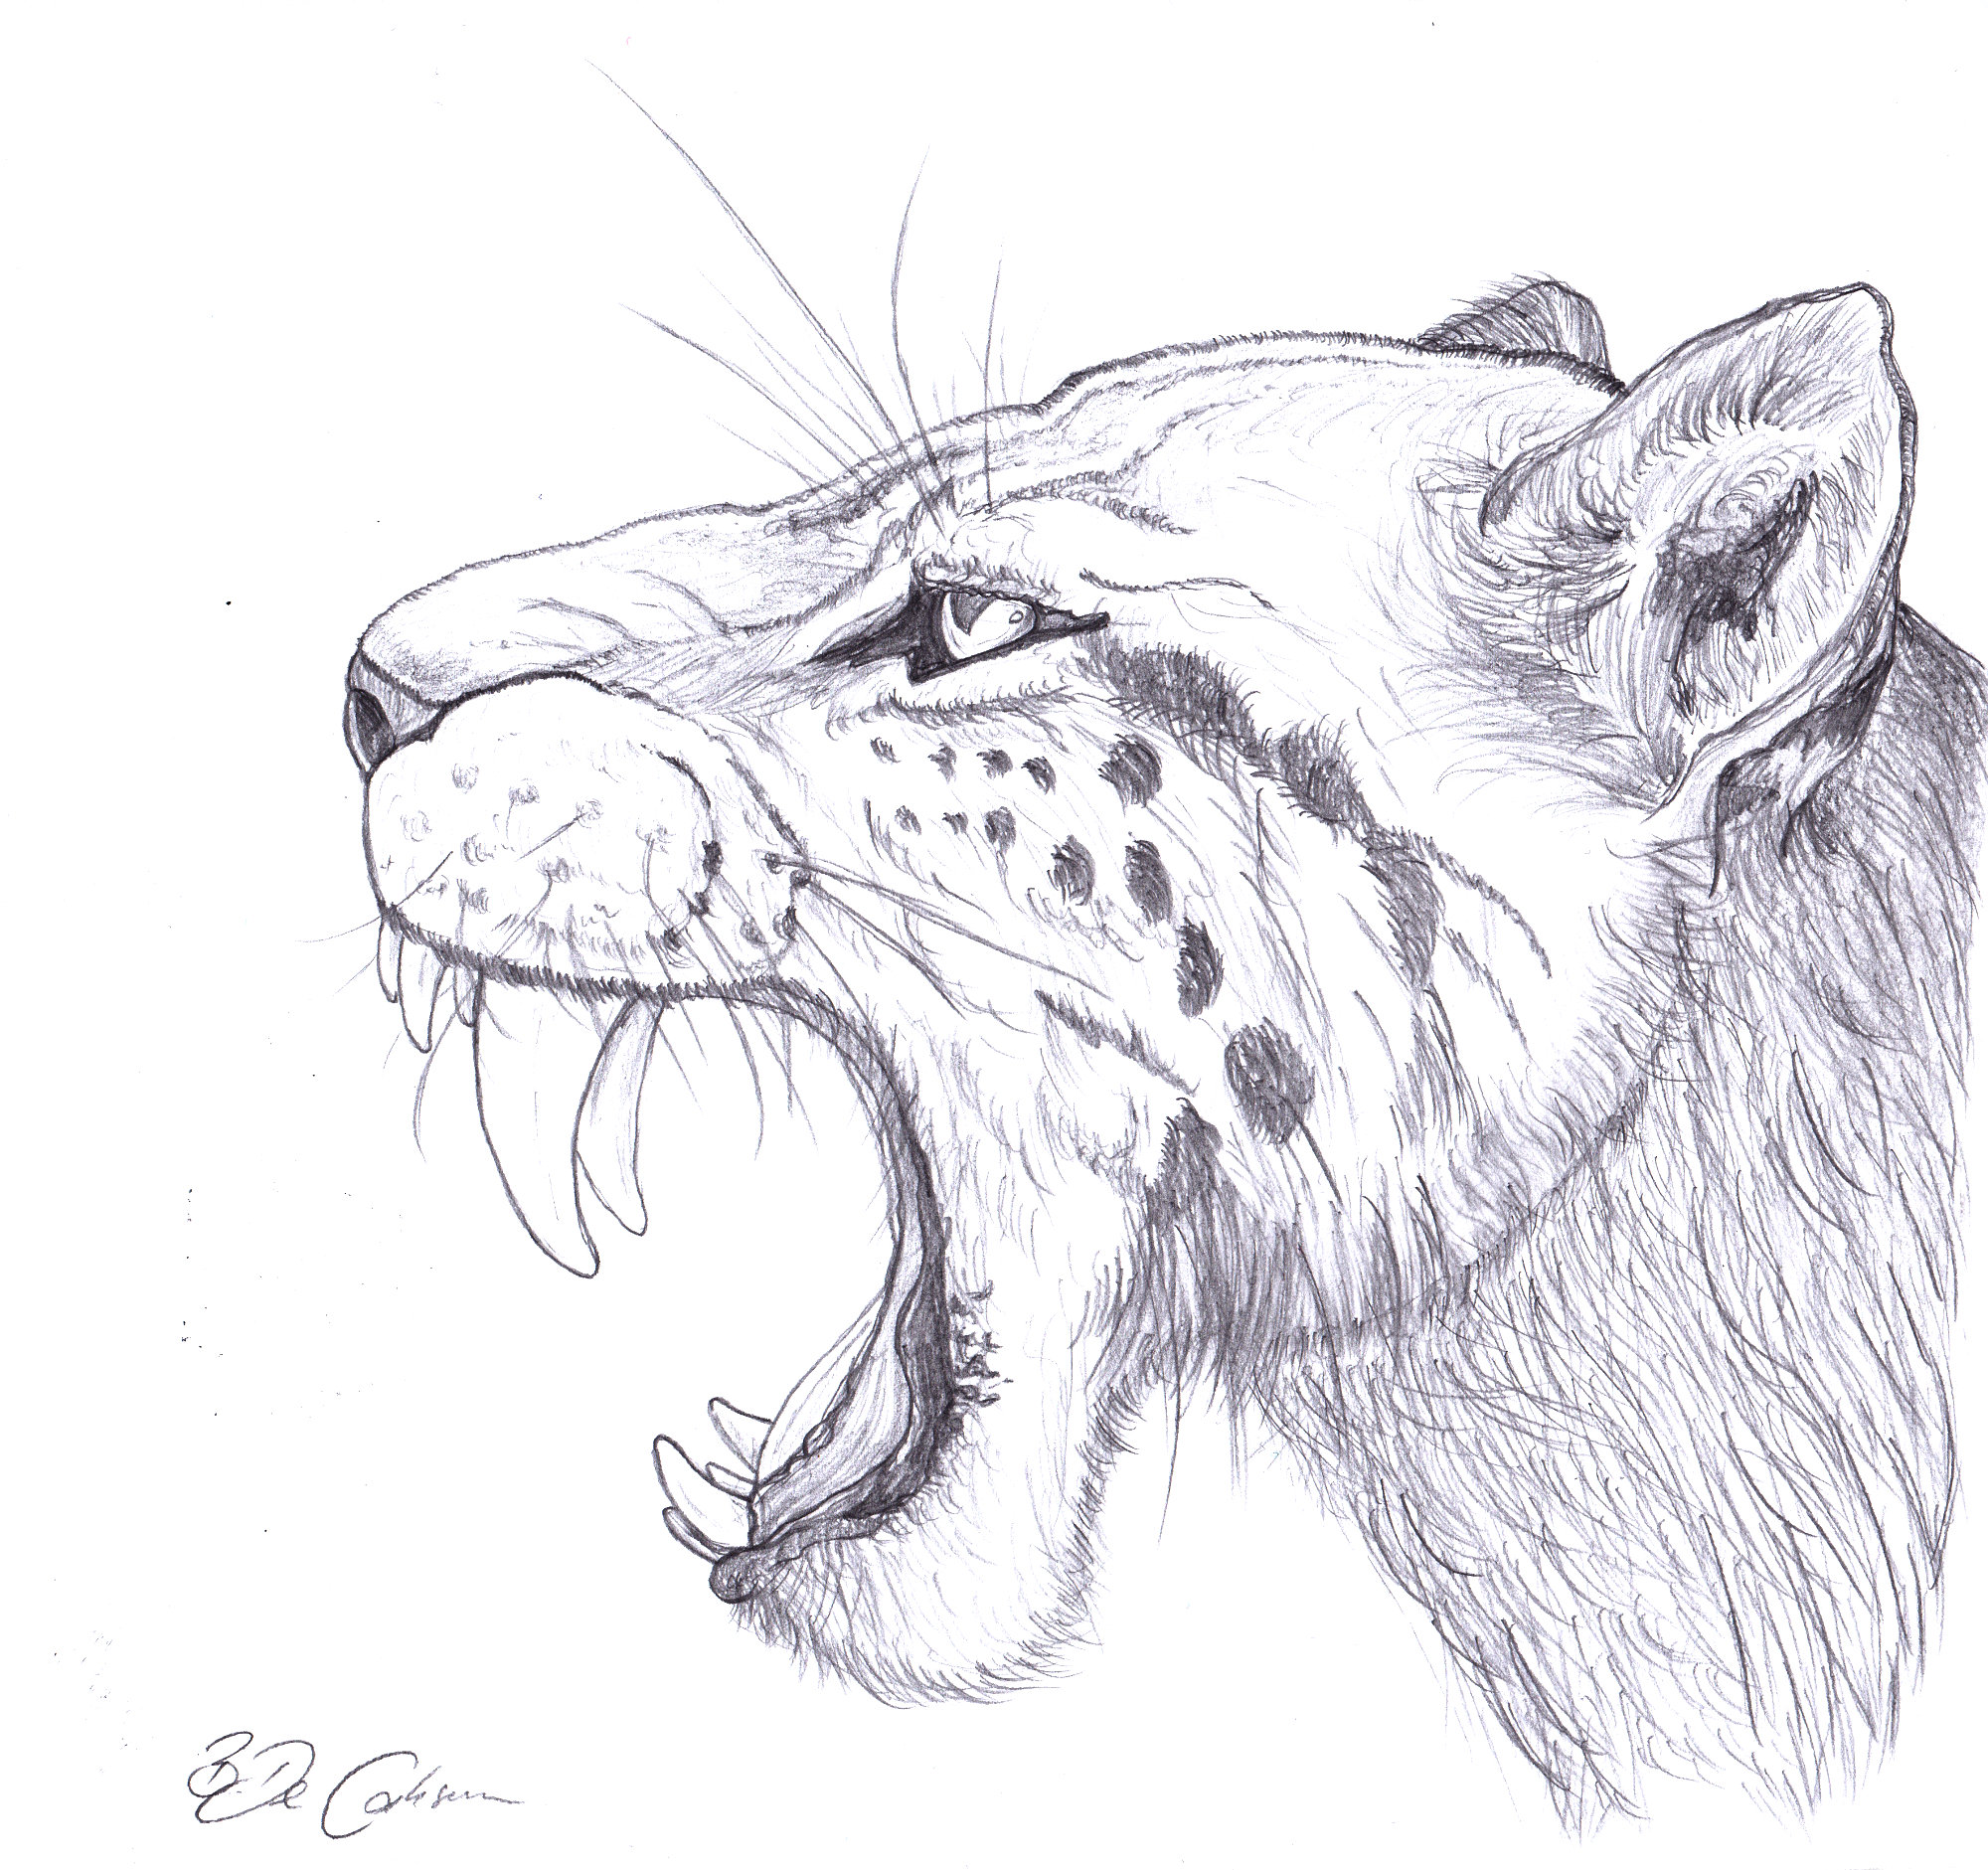 Sabertooth tiger sketch by RobertoBonelli on DeviantArt